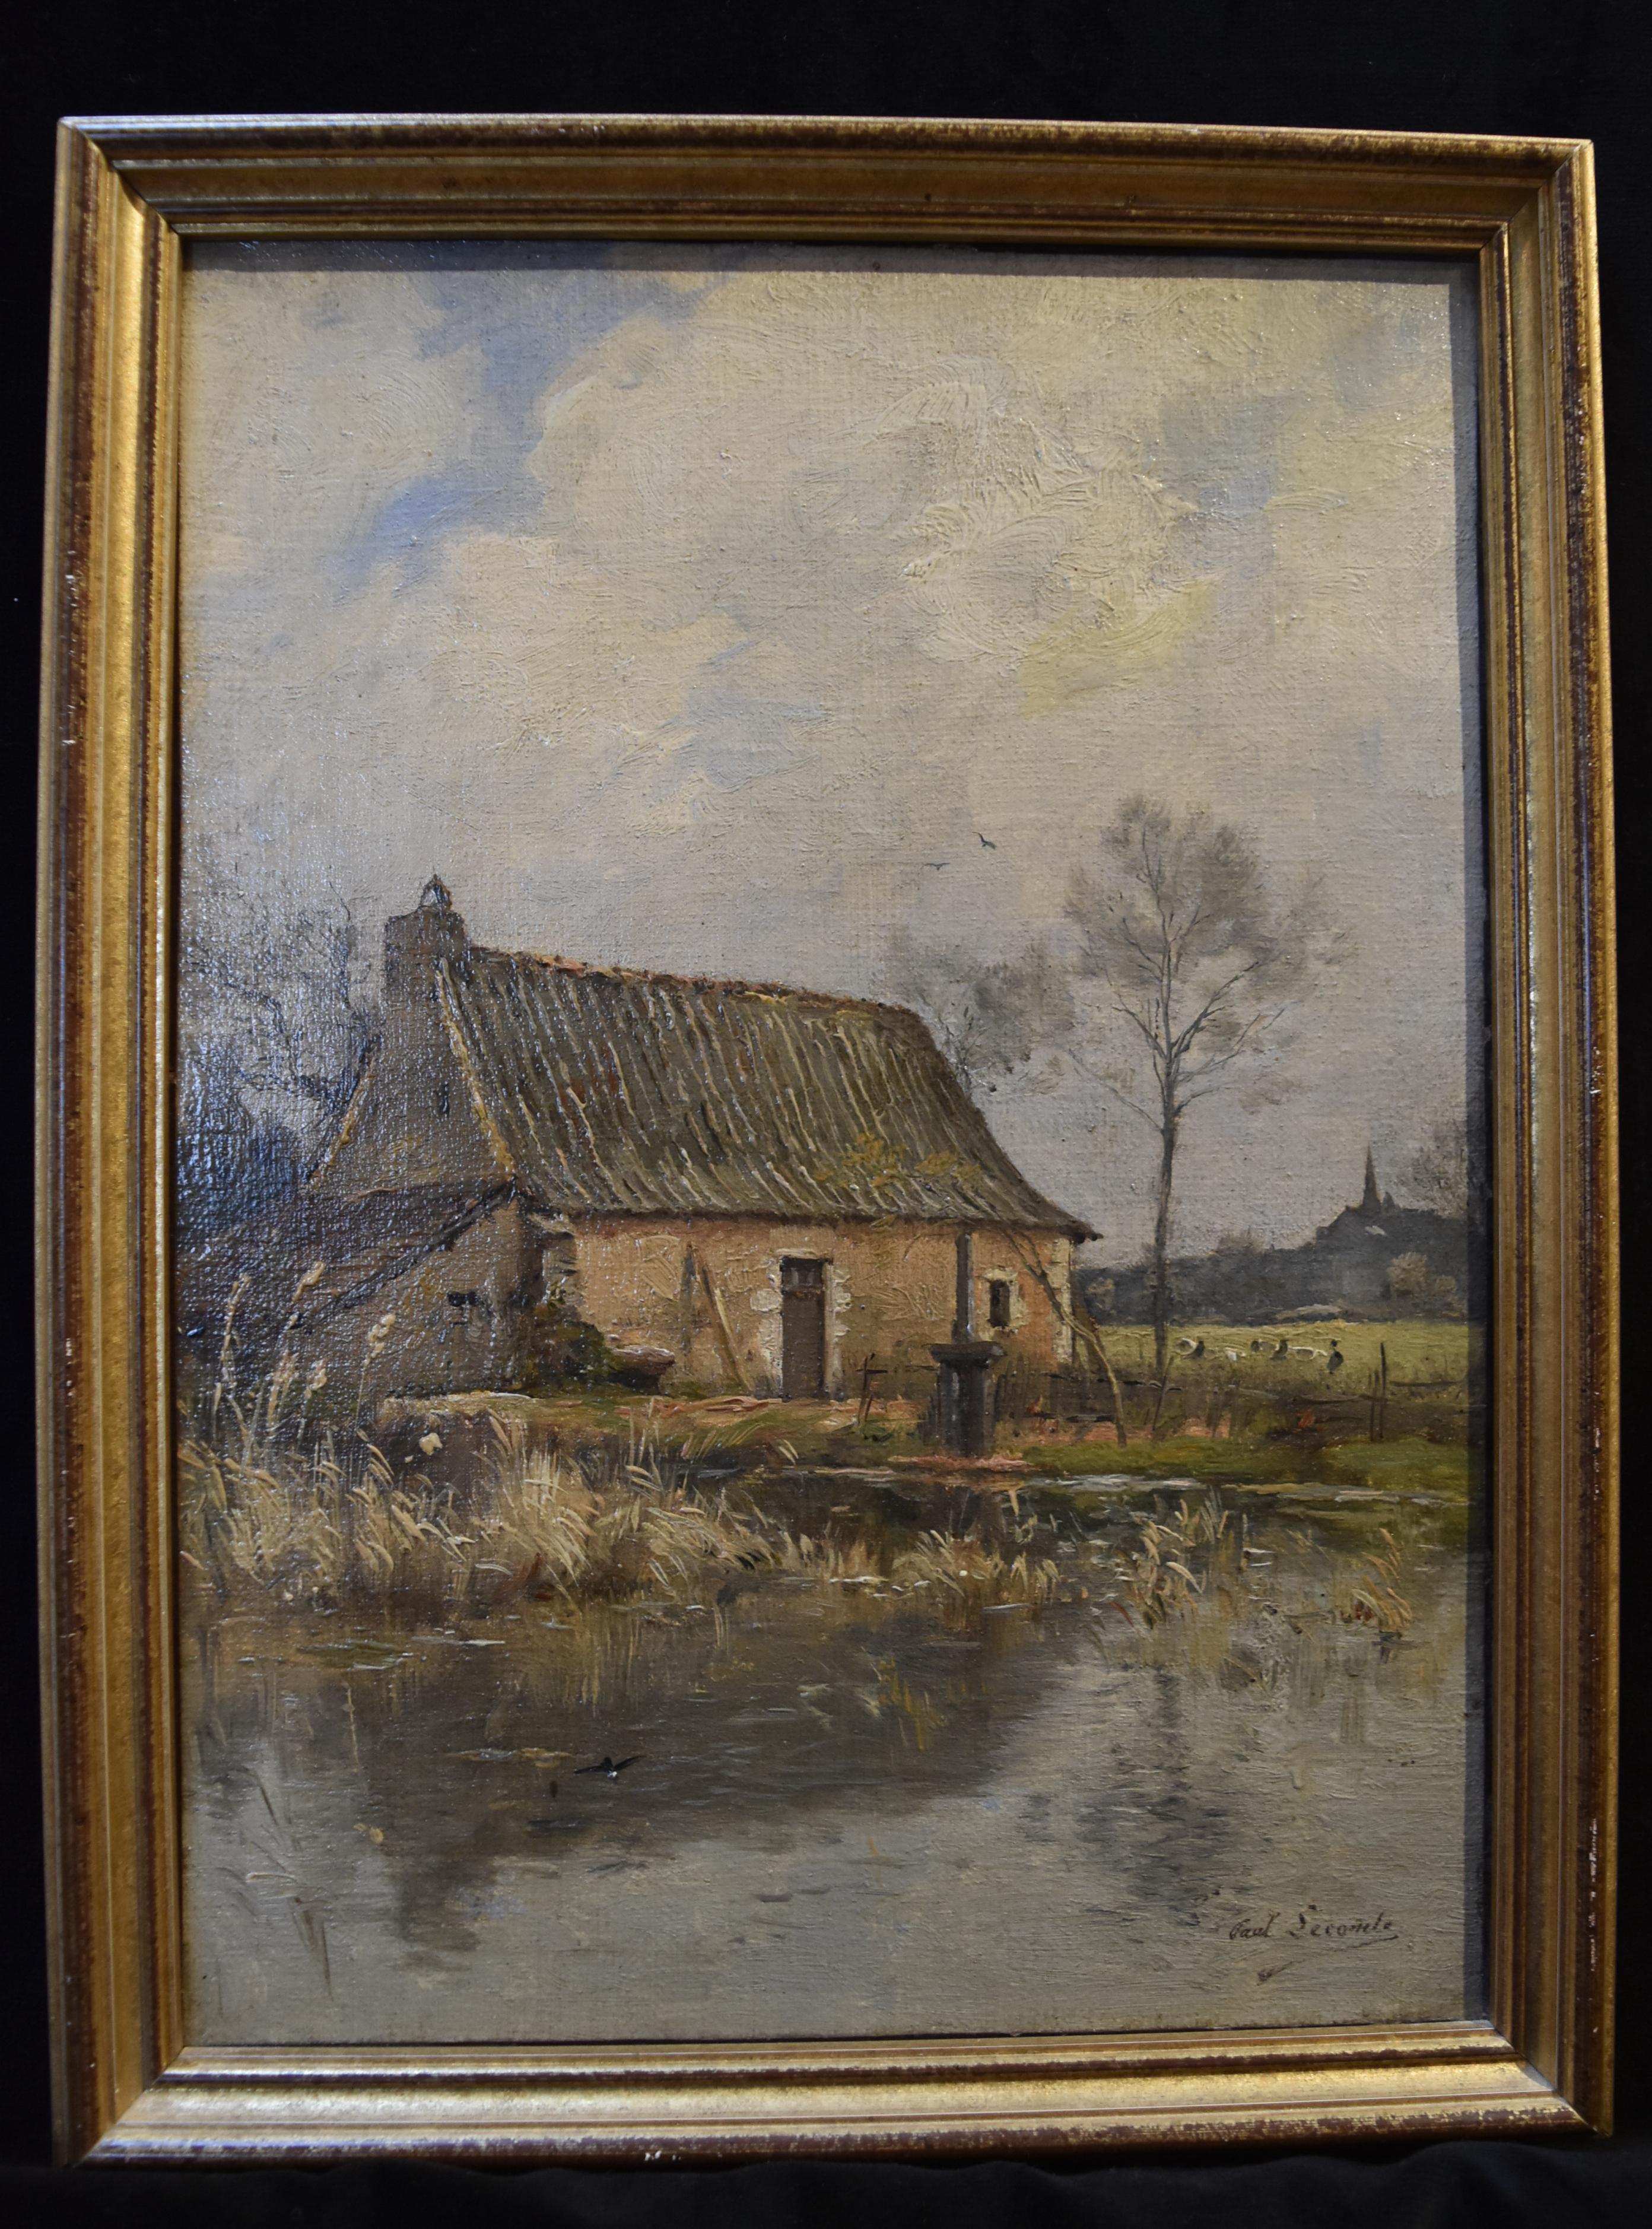 Paul Lecomte (1842-1920) Eine Farm in der Nähe eines Teichs, Öl auf Leinwand, signiert 1